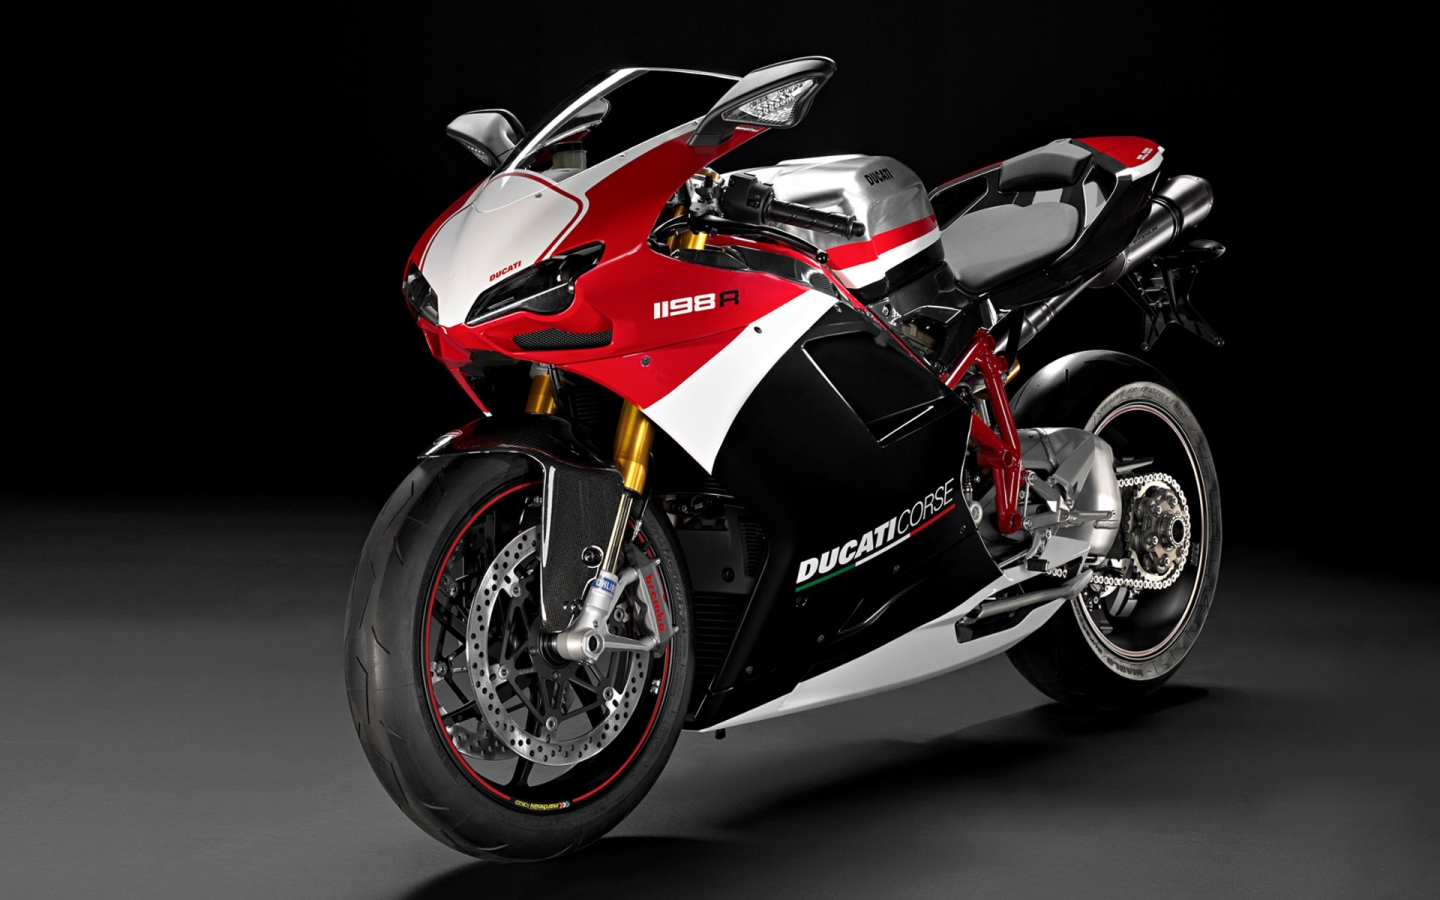 Ducati Superbike-1198-R-Corse for 1440 x 900 widescreen resolution